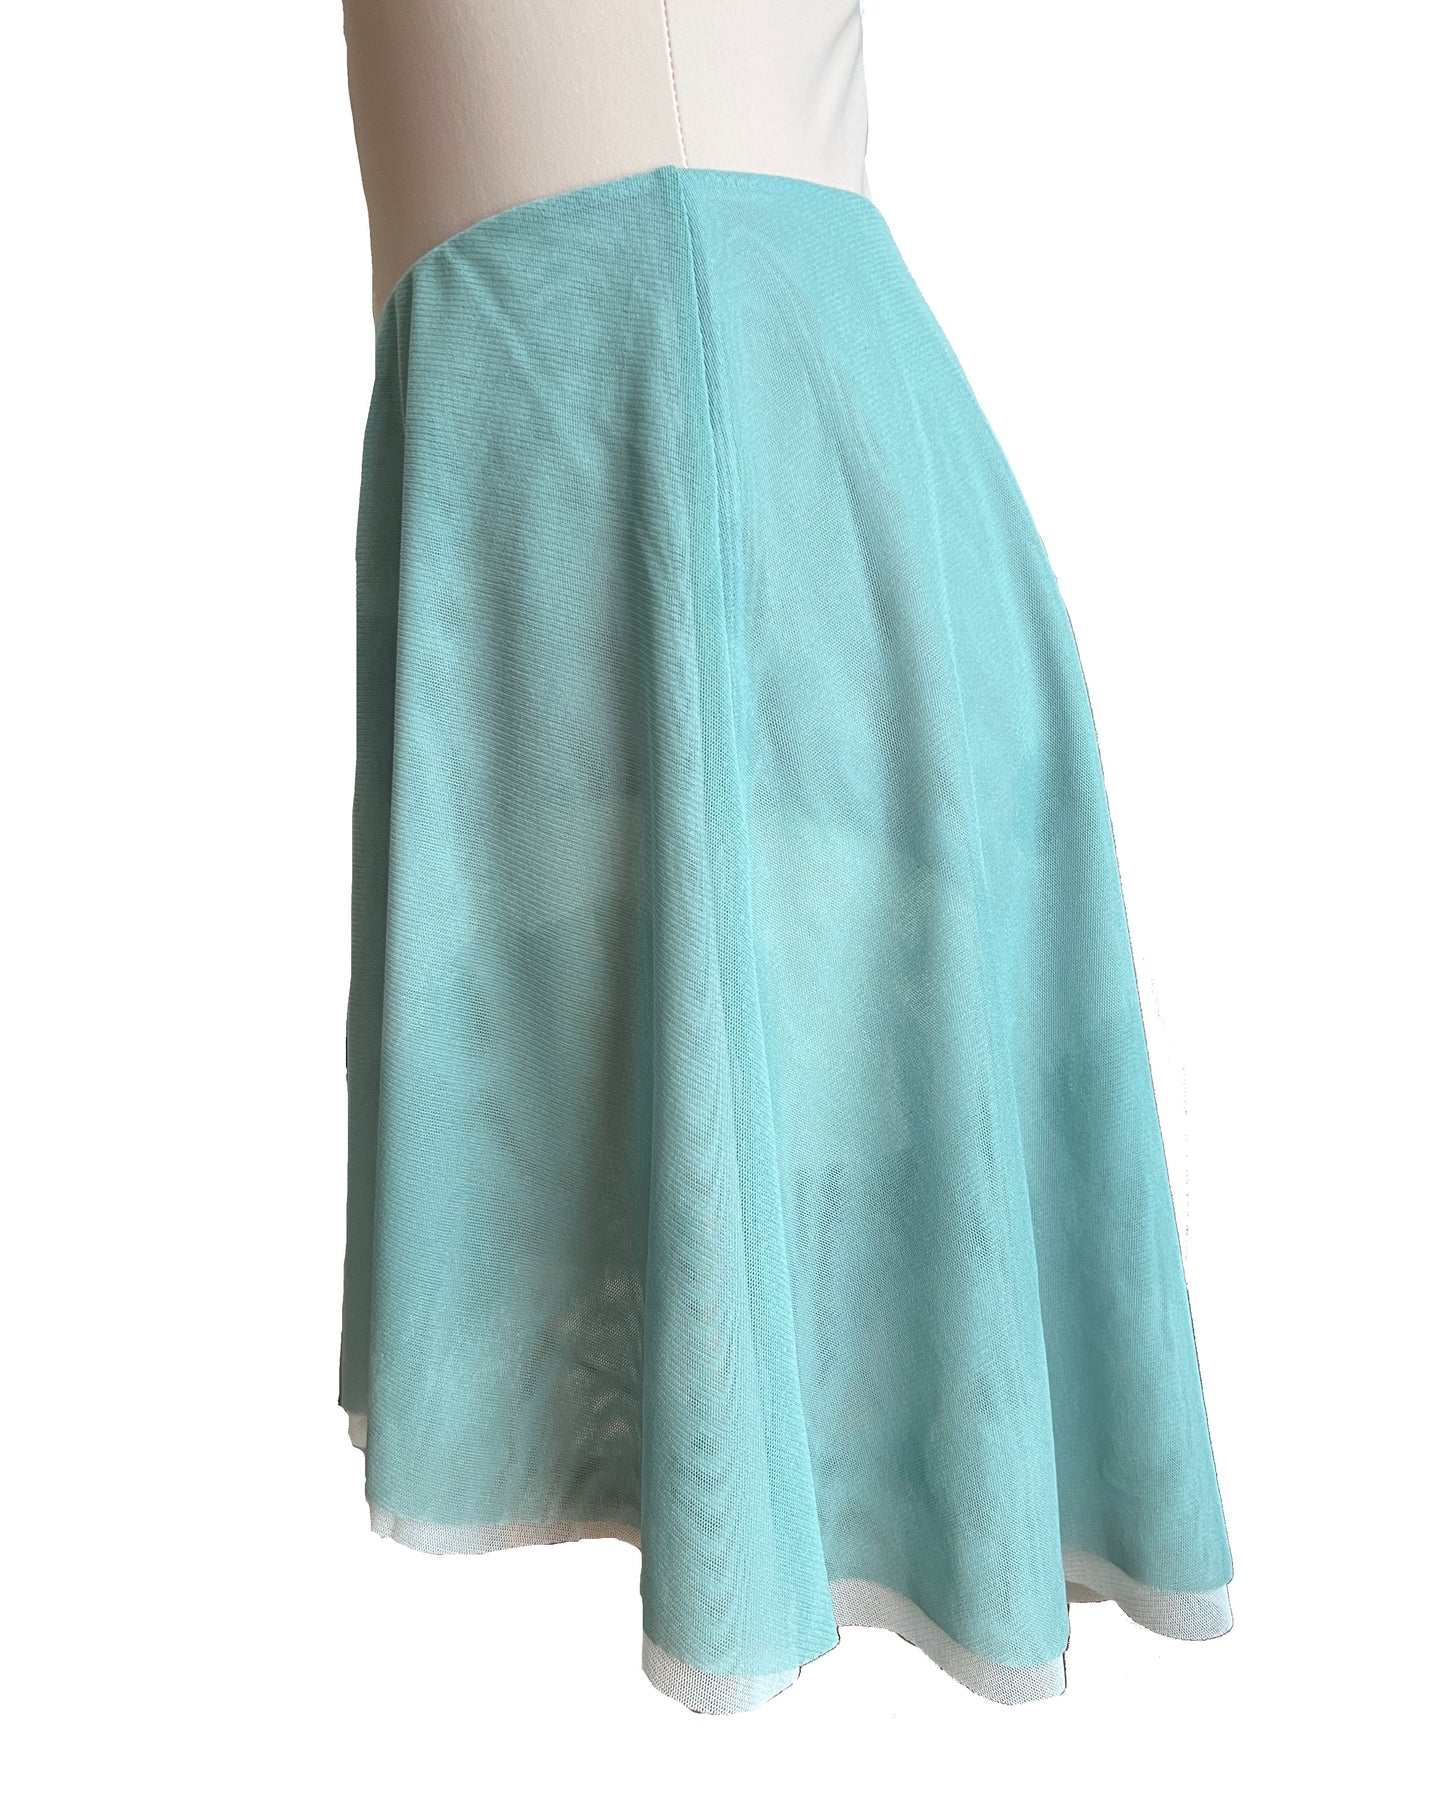 Reversible Skirt  (Green Tea×Light Mint )